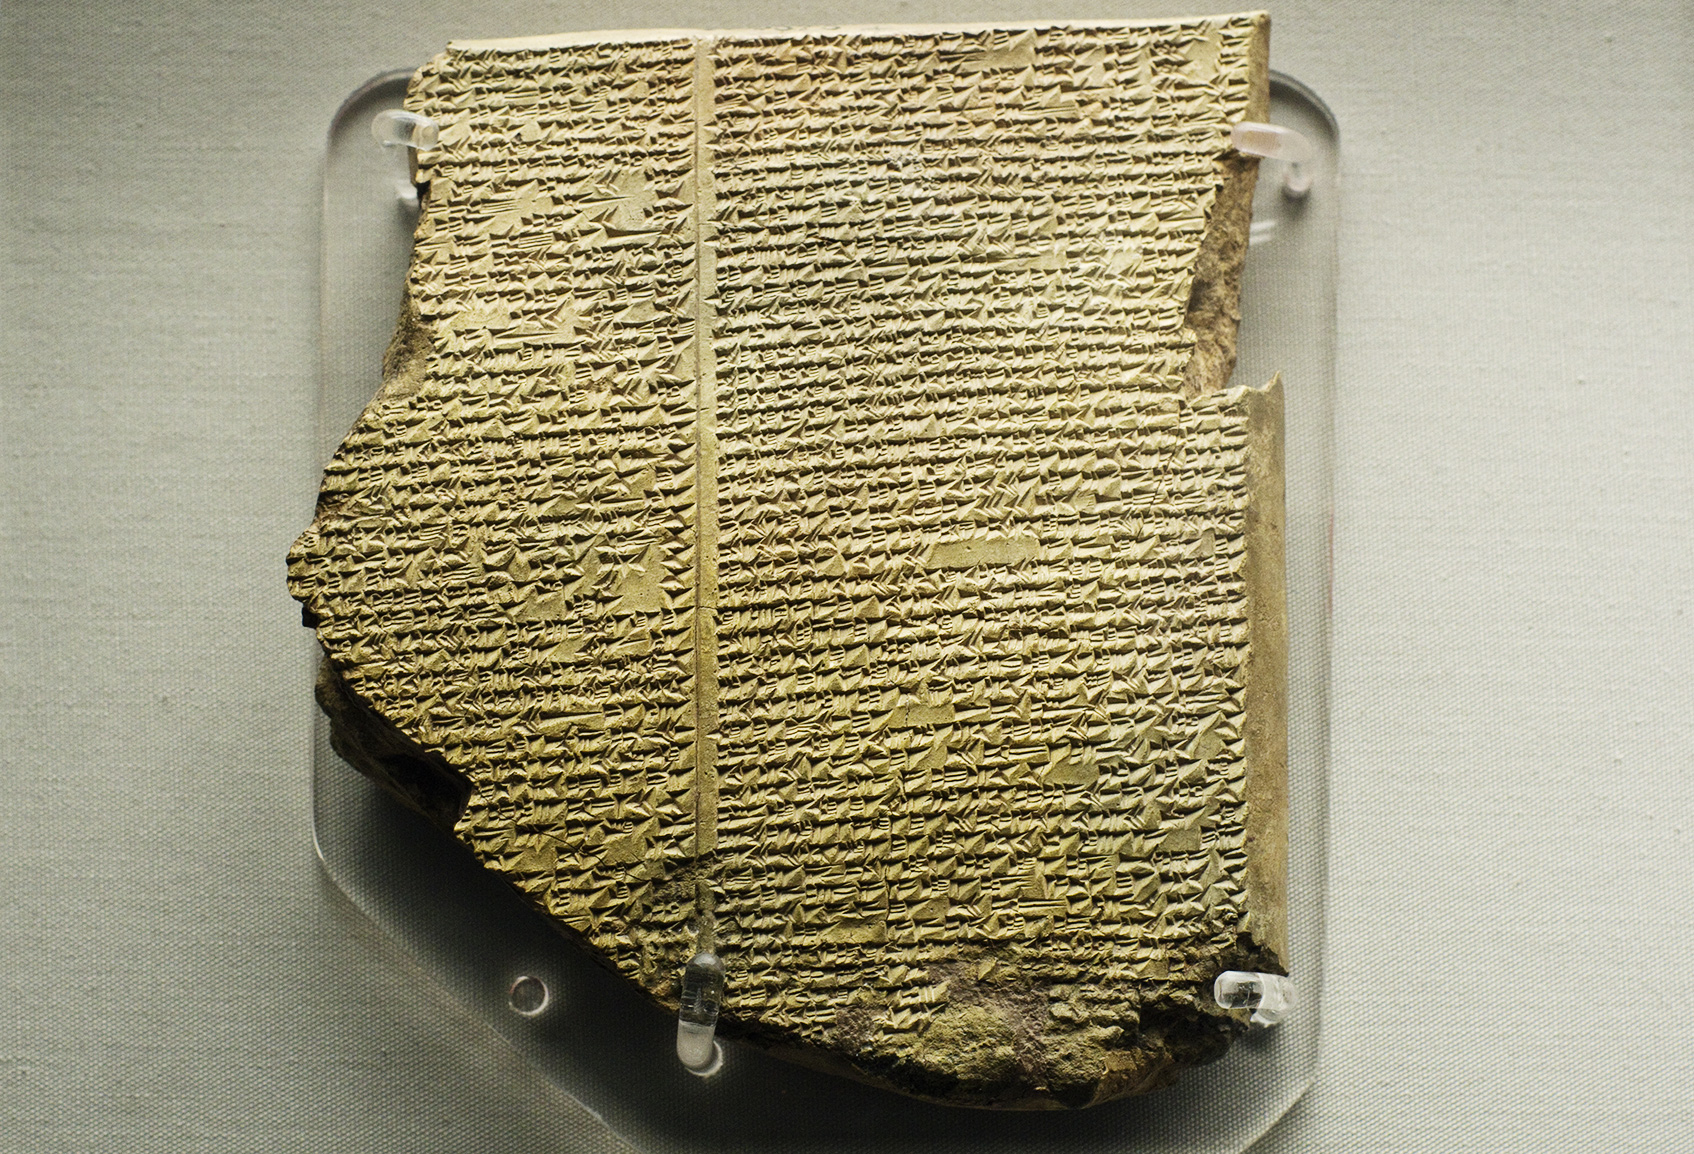 Auf der Tafel 11 des berühmten Gilgamesch-Epos ist die Sintflutgeschichte wiedergegeben.